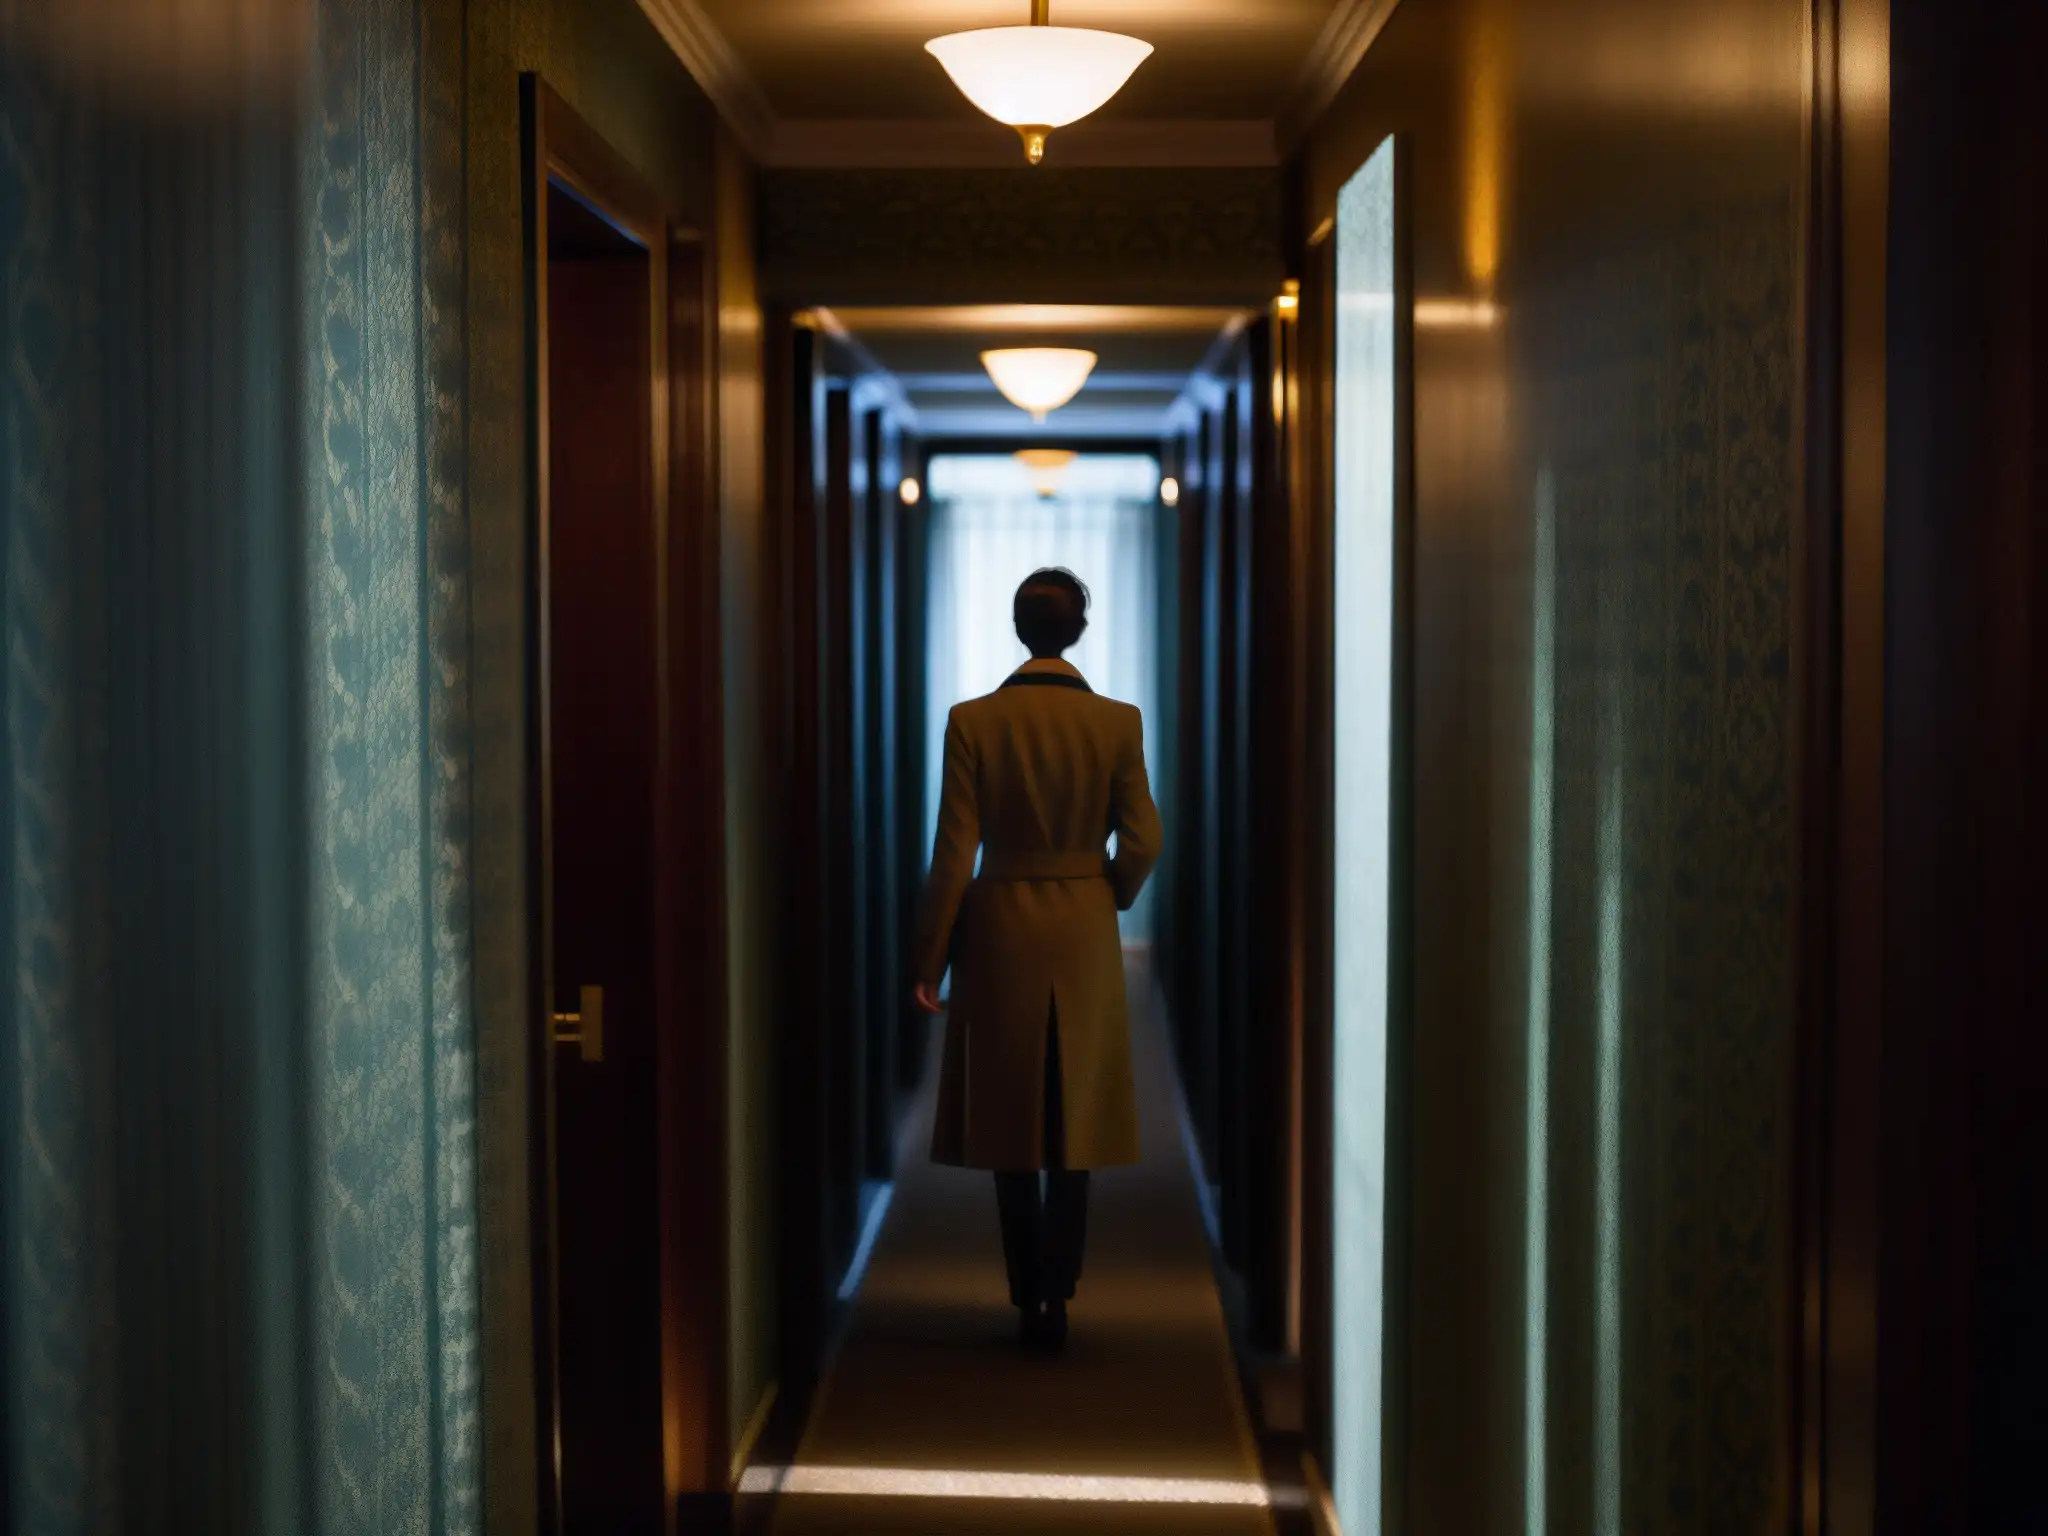 Un pasillo sombrío del Hotel Cecil con papel pintado desgastado y luces parpadeantes, creando sombras tenebrosas